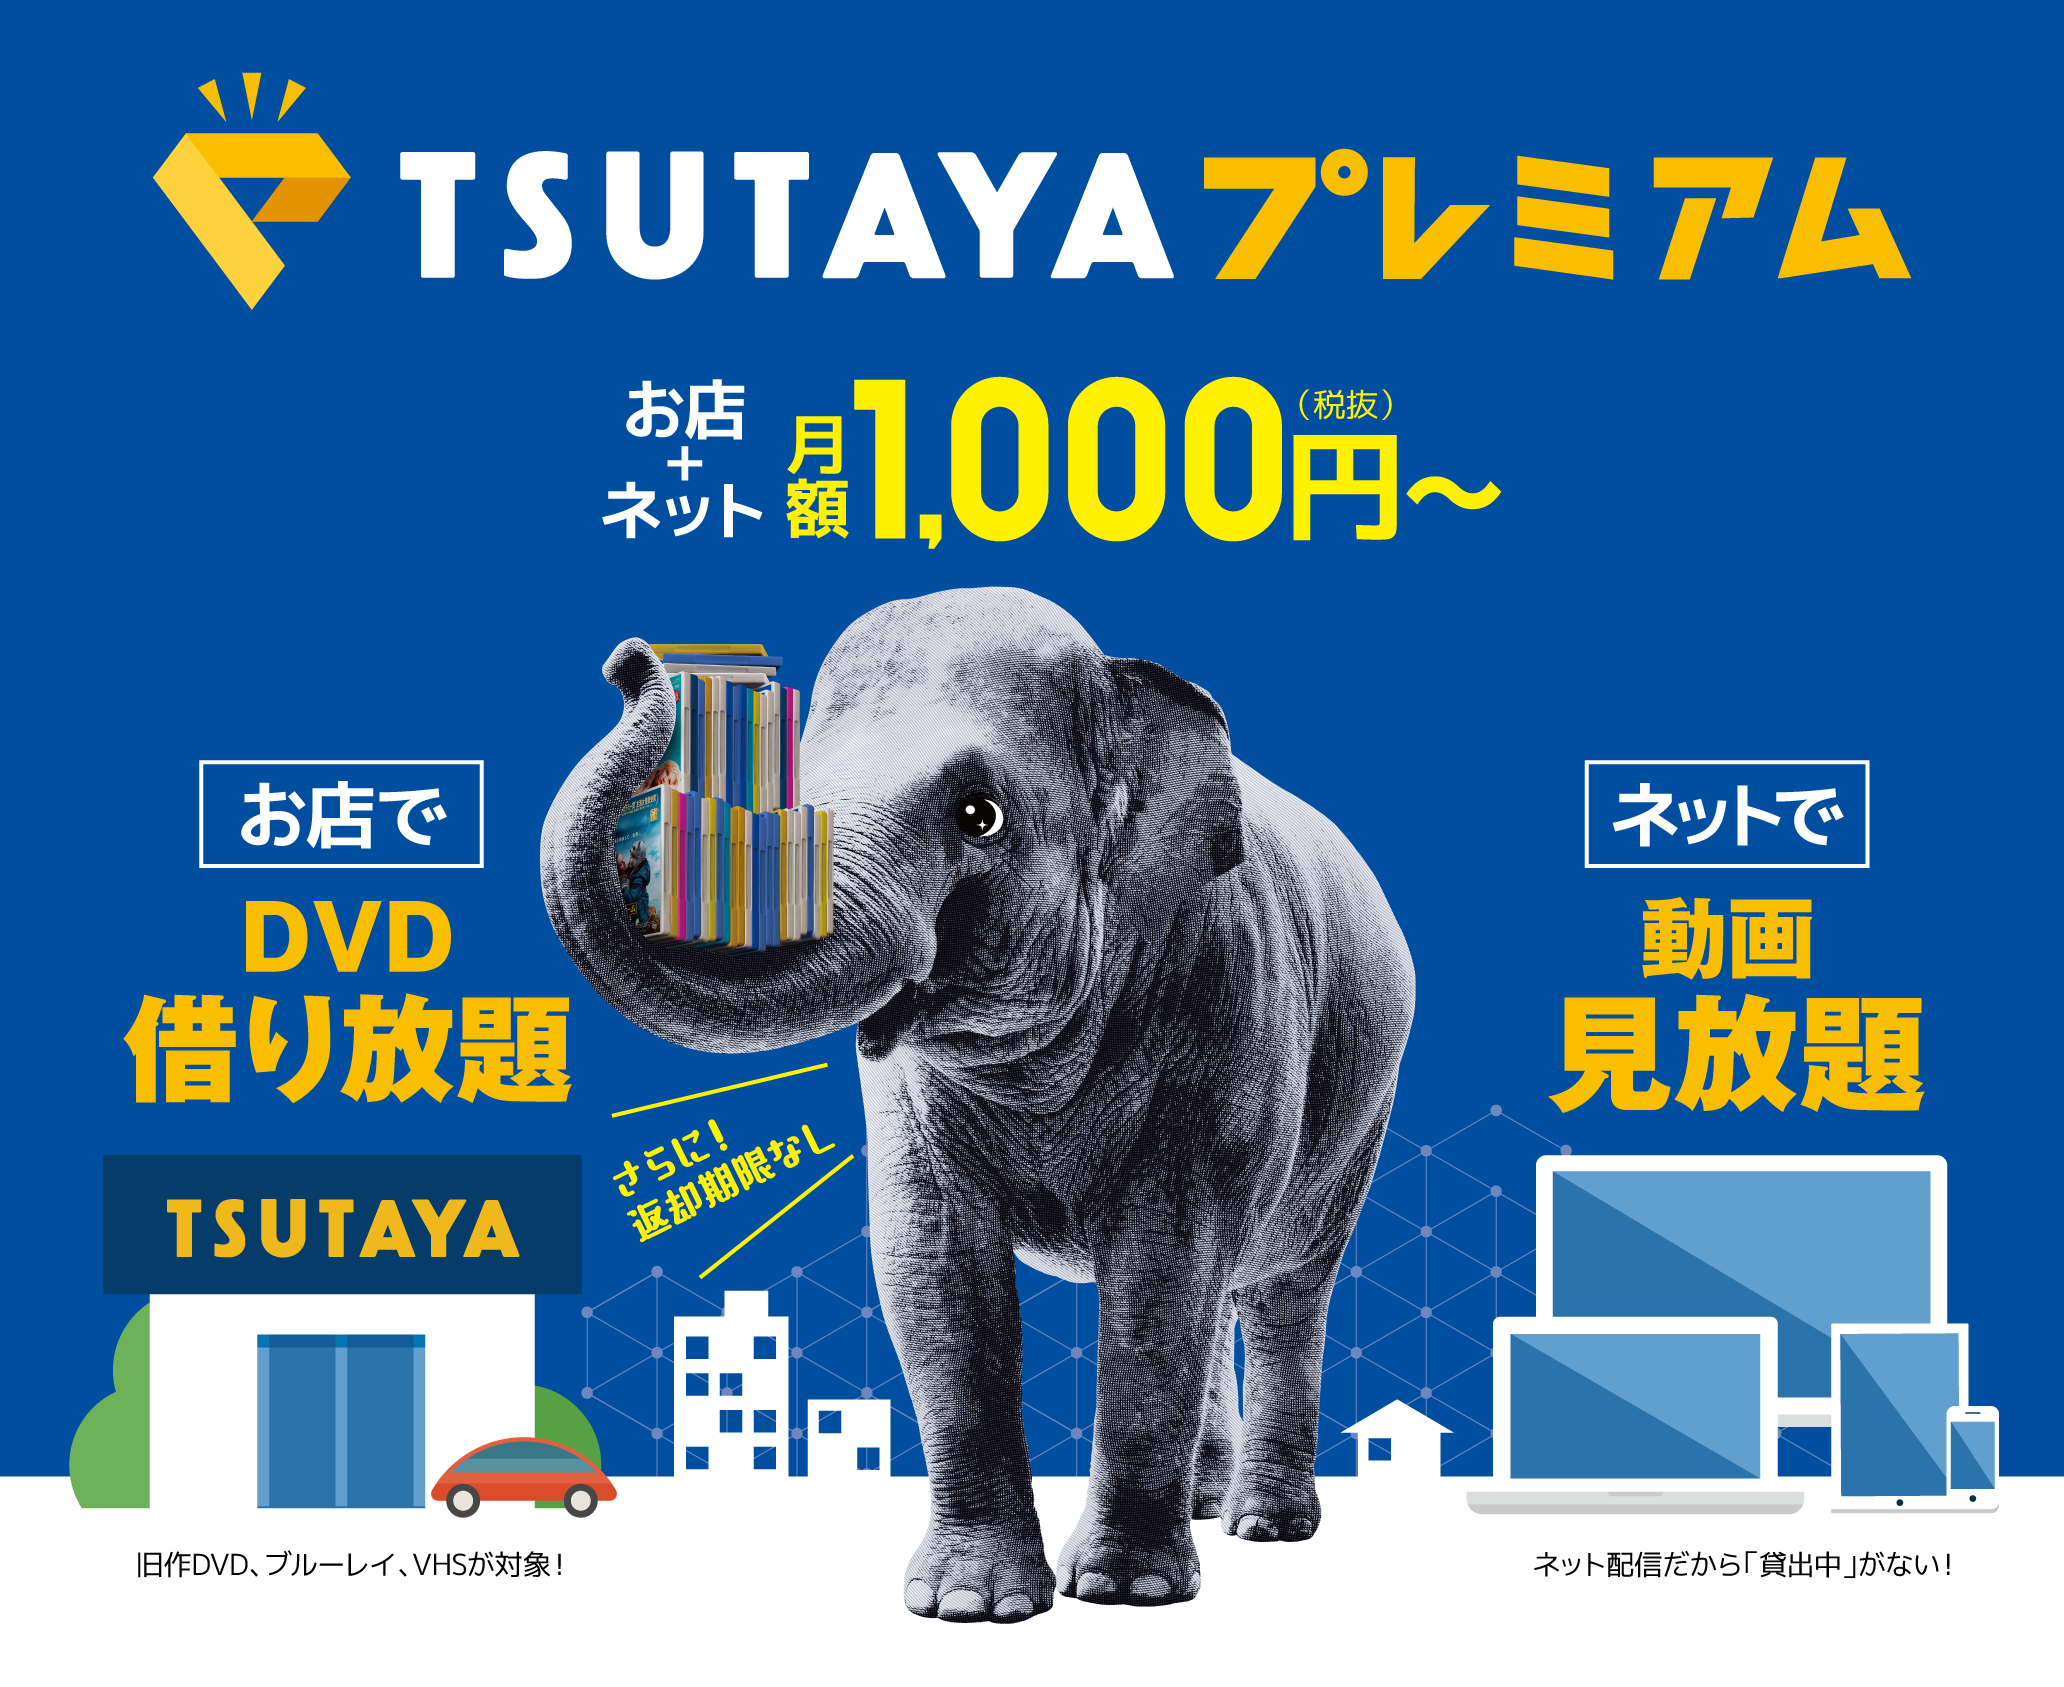 Tsutaya ツタヤ のレンタルcd Dvd商品の探し方 絶対見つかるtsutaya店員が教えるコツ ひなたんちひなたんち